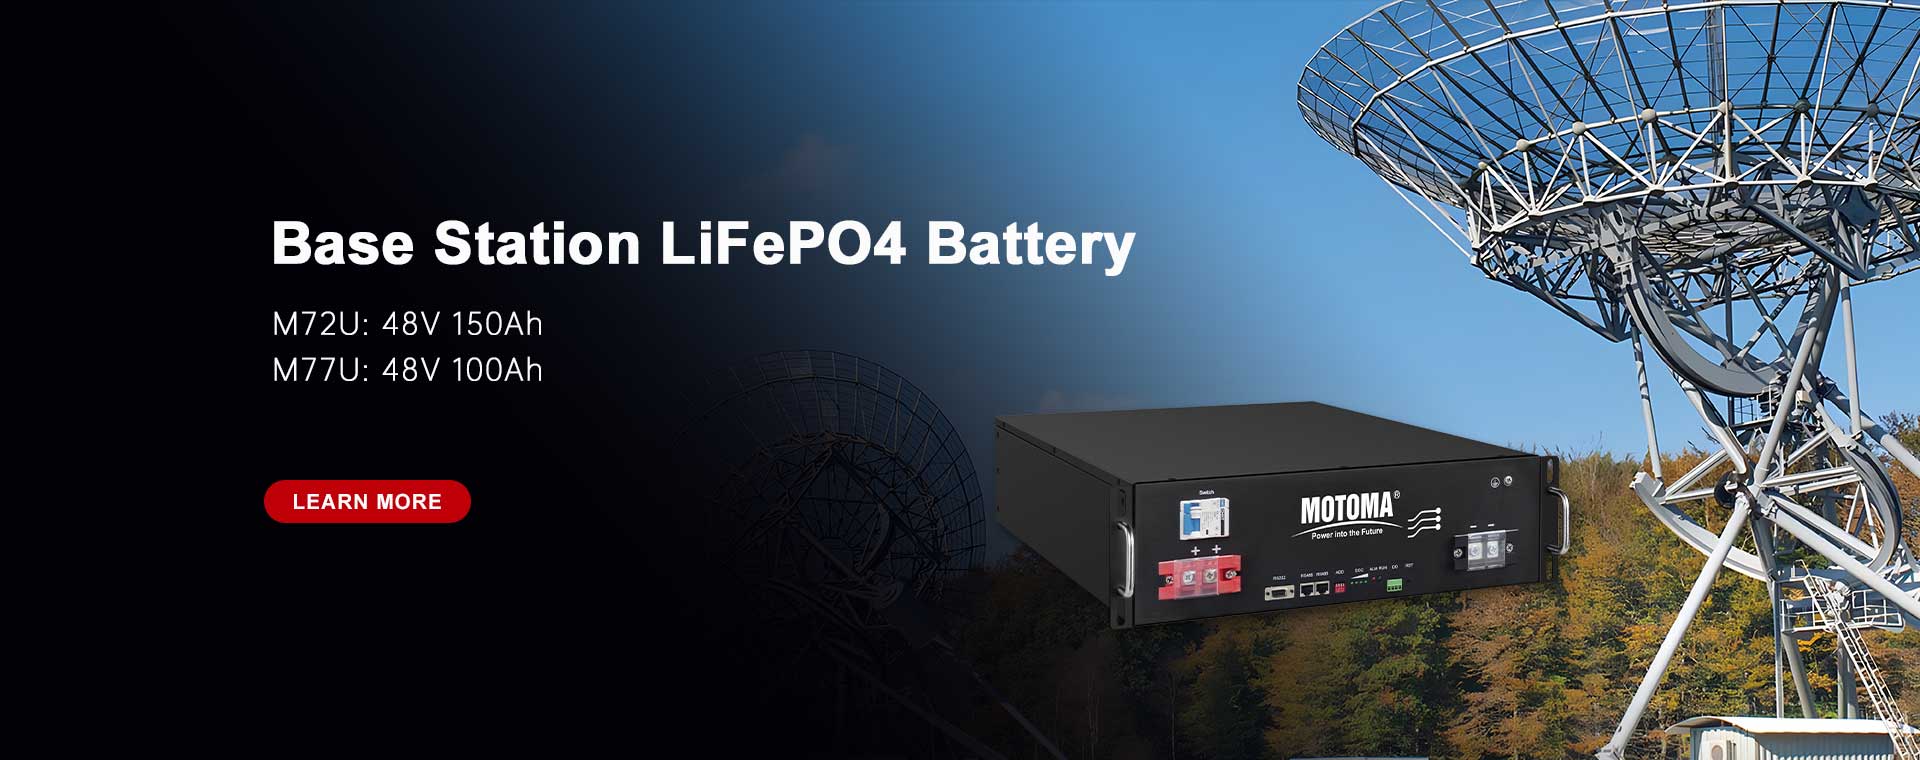 Batería de estación base LiFePO4